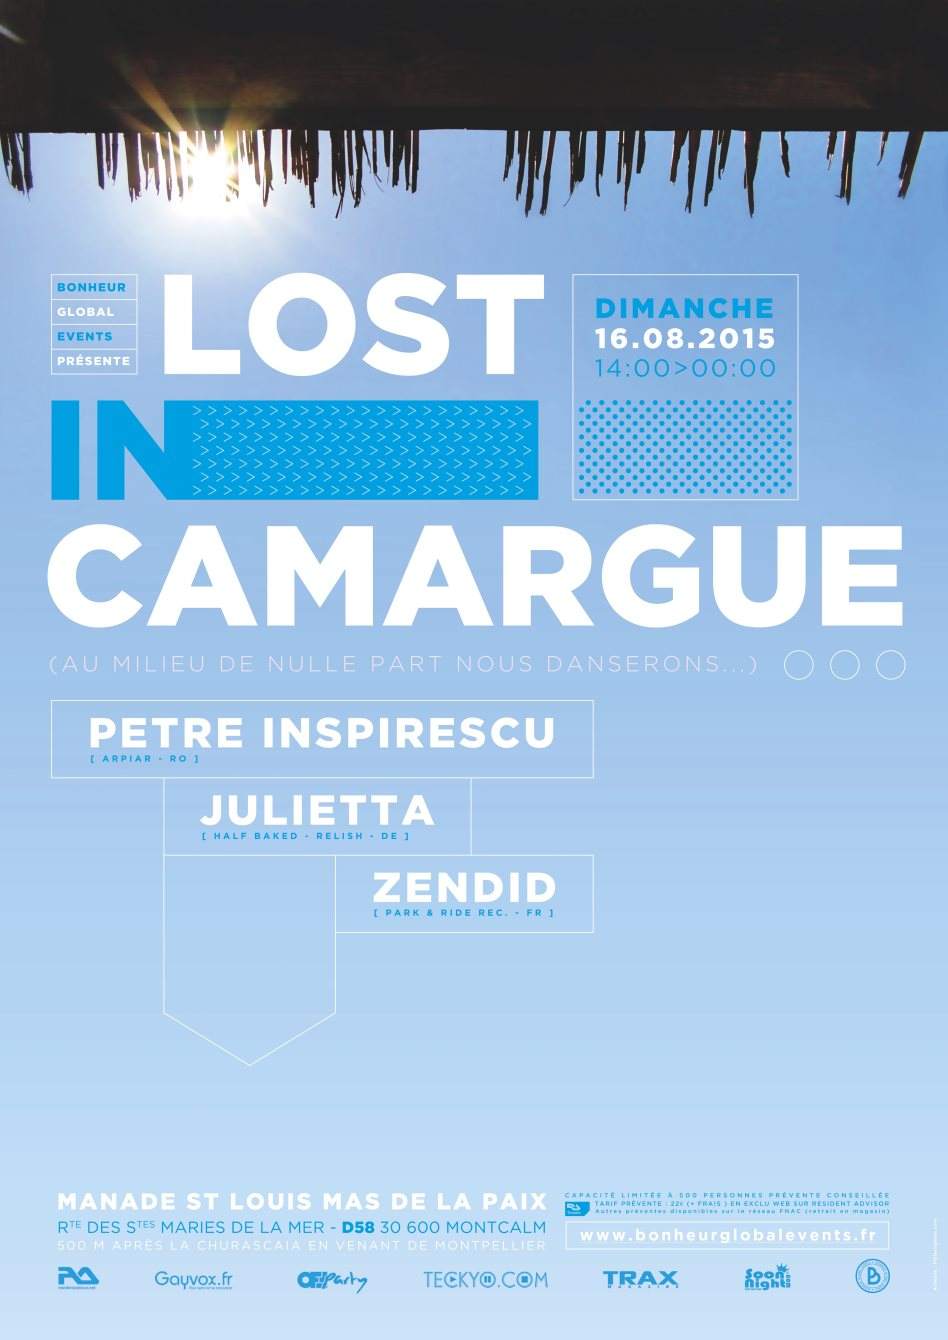 Lost in Camargue (Open Air) - Petre Inspirescu, Julietta, Zendid - Página frontal